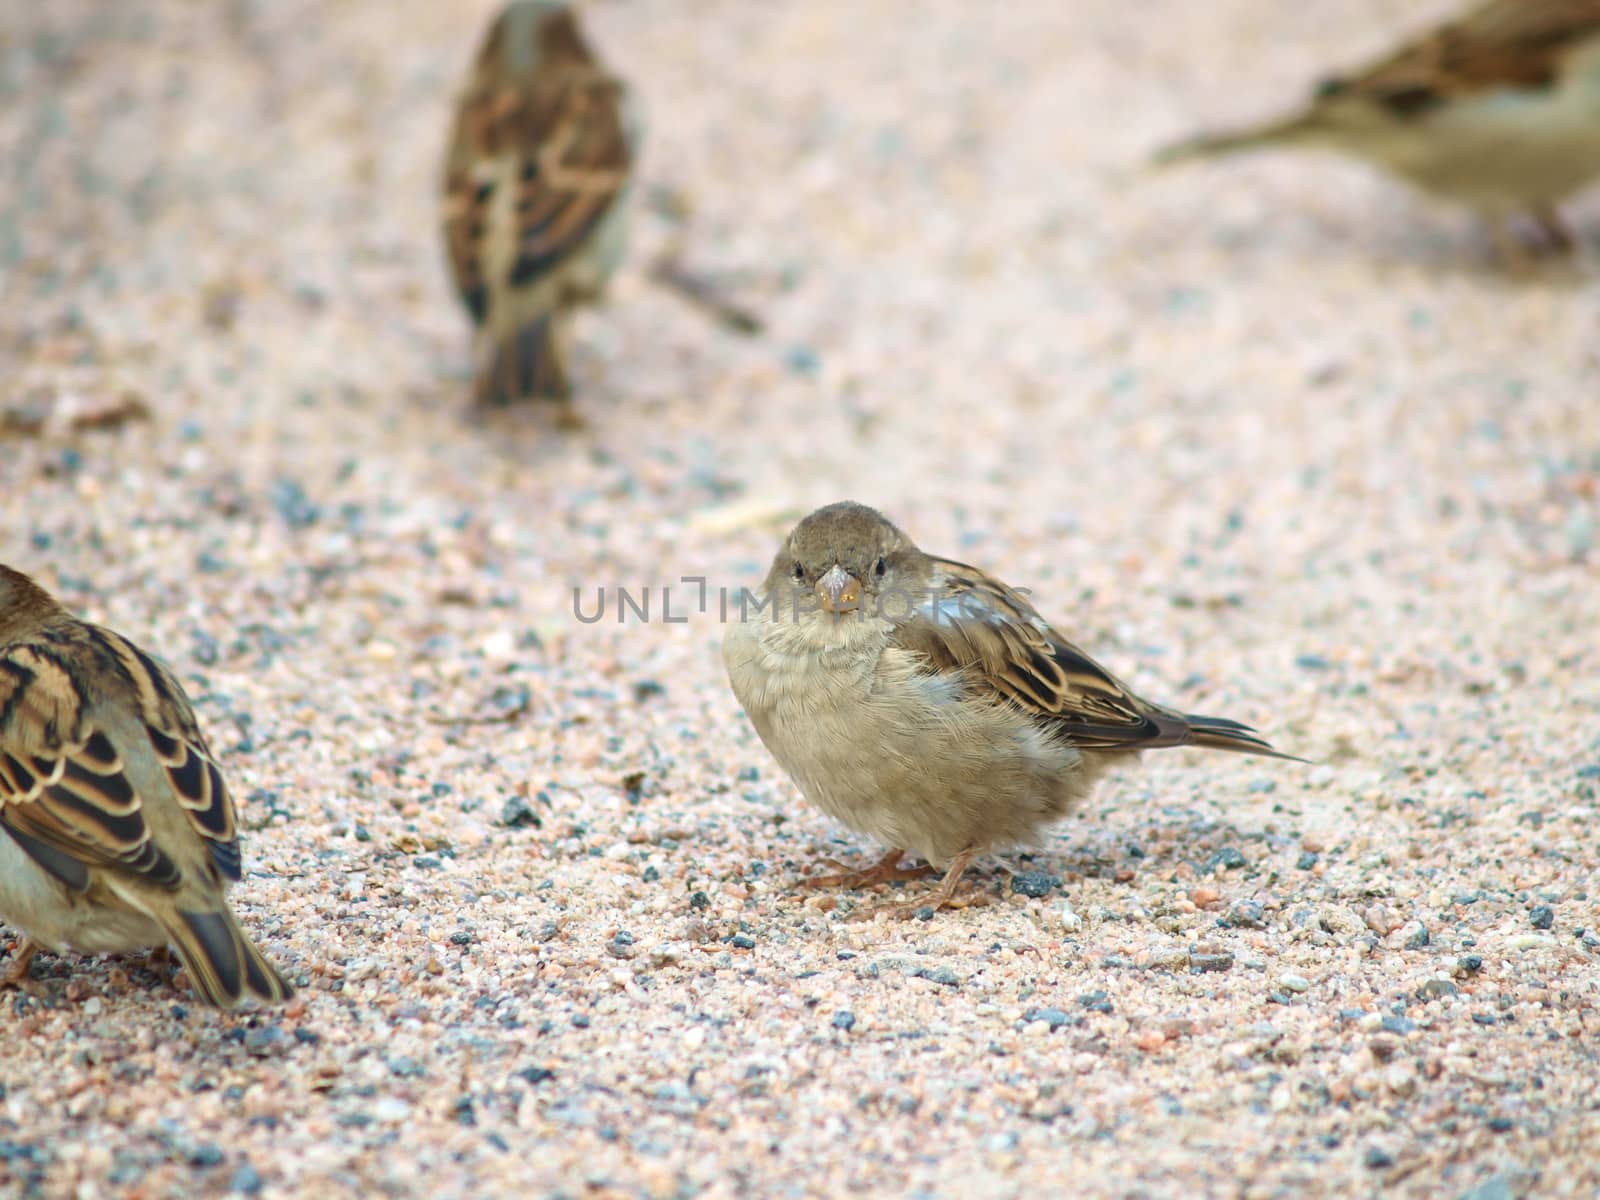 Sparrow on gravel by Arvebettum